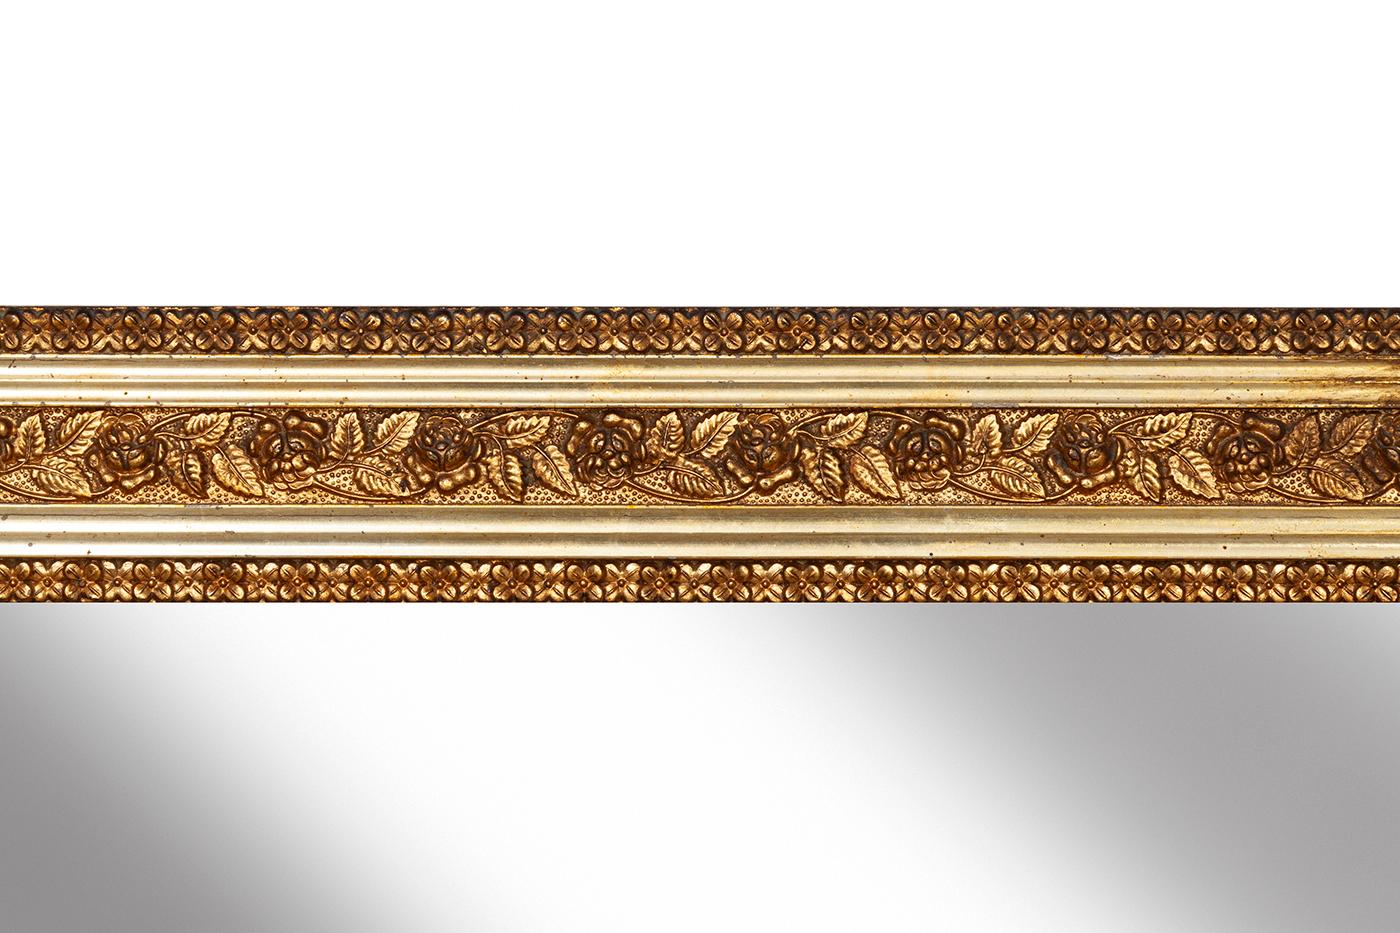 Fin du XIXe siècle/début du XXe siècle Cadre en bois doré du mouvement esthétique avec un motif de fleurs et de feuilles doré entre un petit motif répété d'équerres croisées sur le cadre intérieur et extérieur. Surface lisse avec des bordures dorées